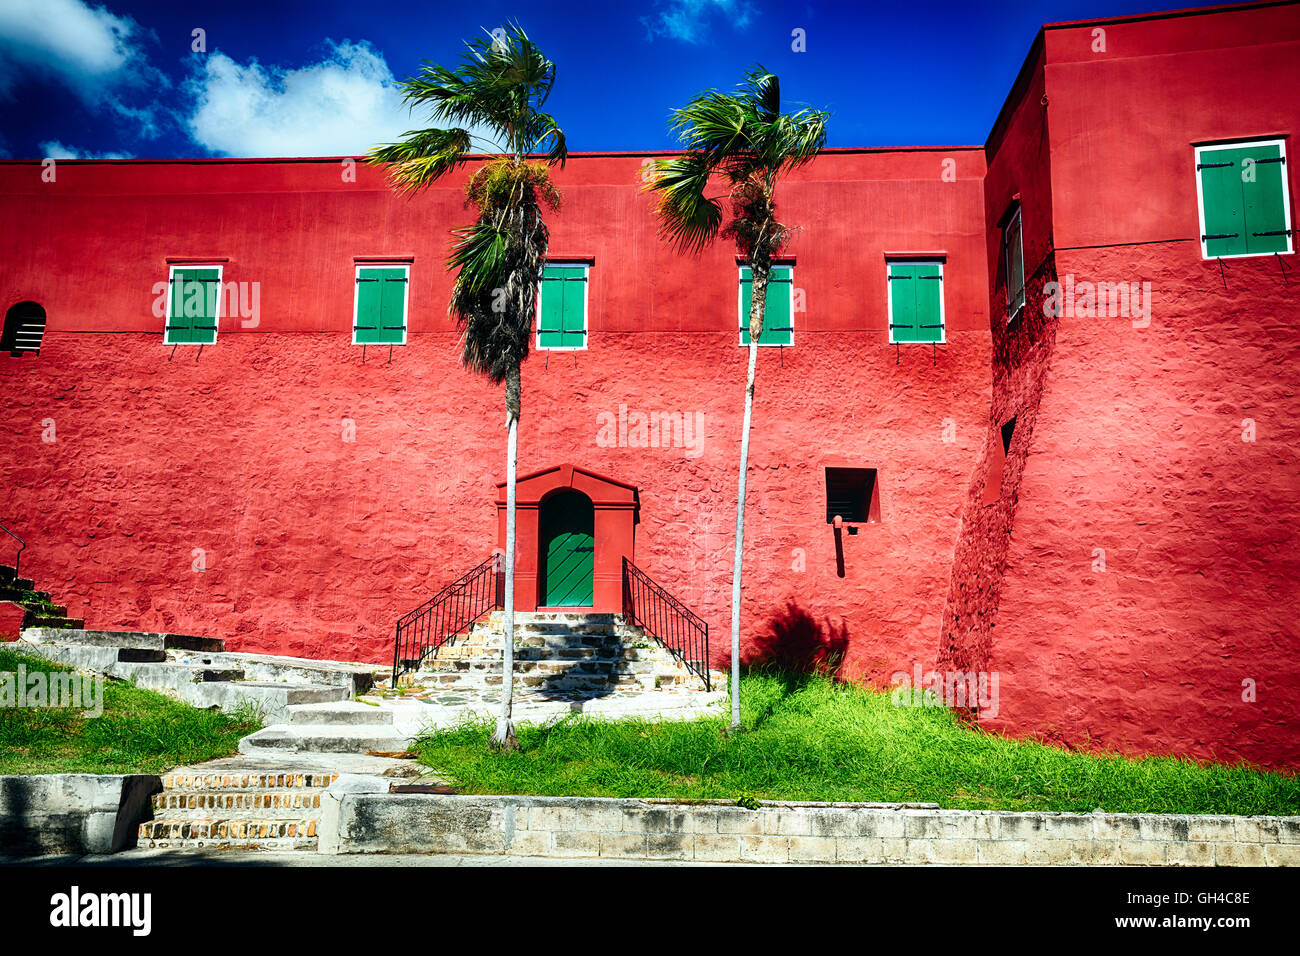 Angolo basso visualizza le pareti rosse e persiane verdi di Fort Christian, Charlotte Amalie, san Tommaso, Isole Vergini Americane Foto Stock